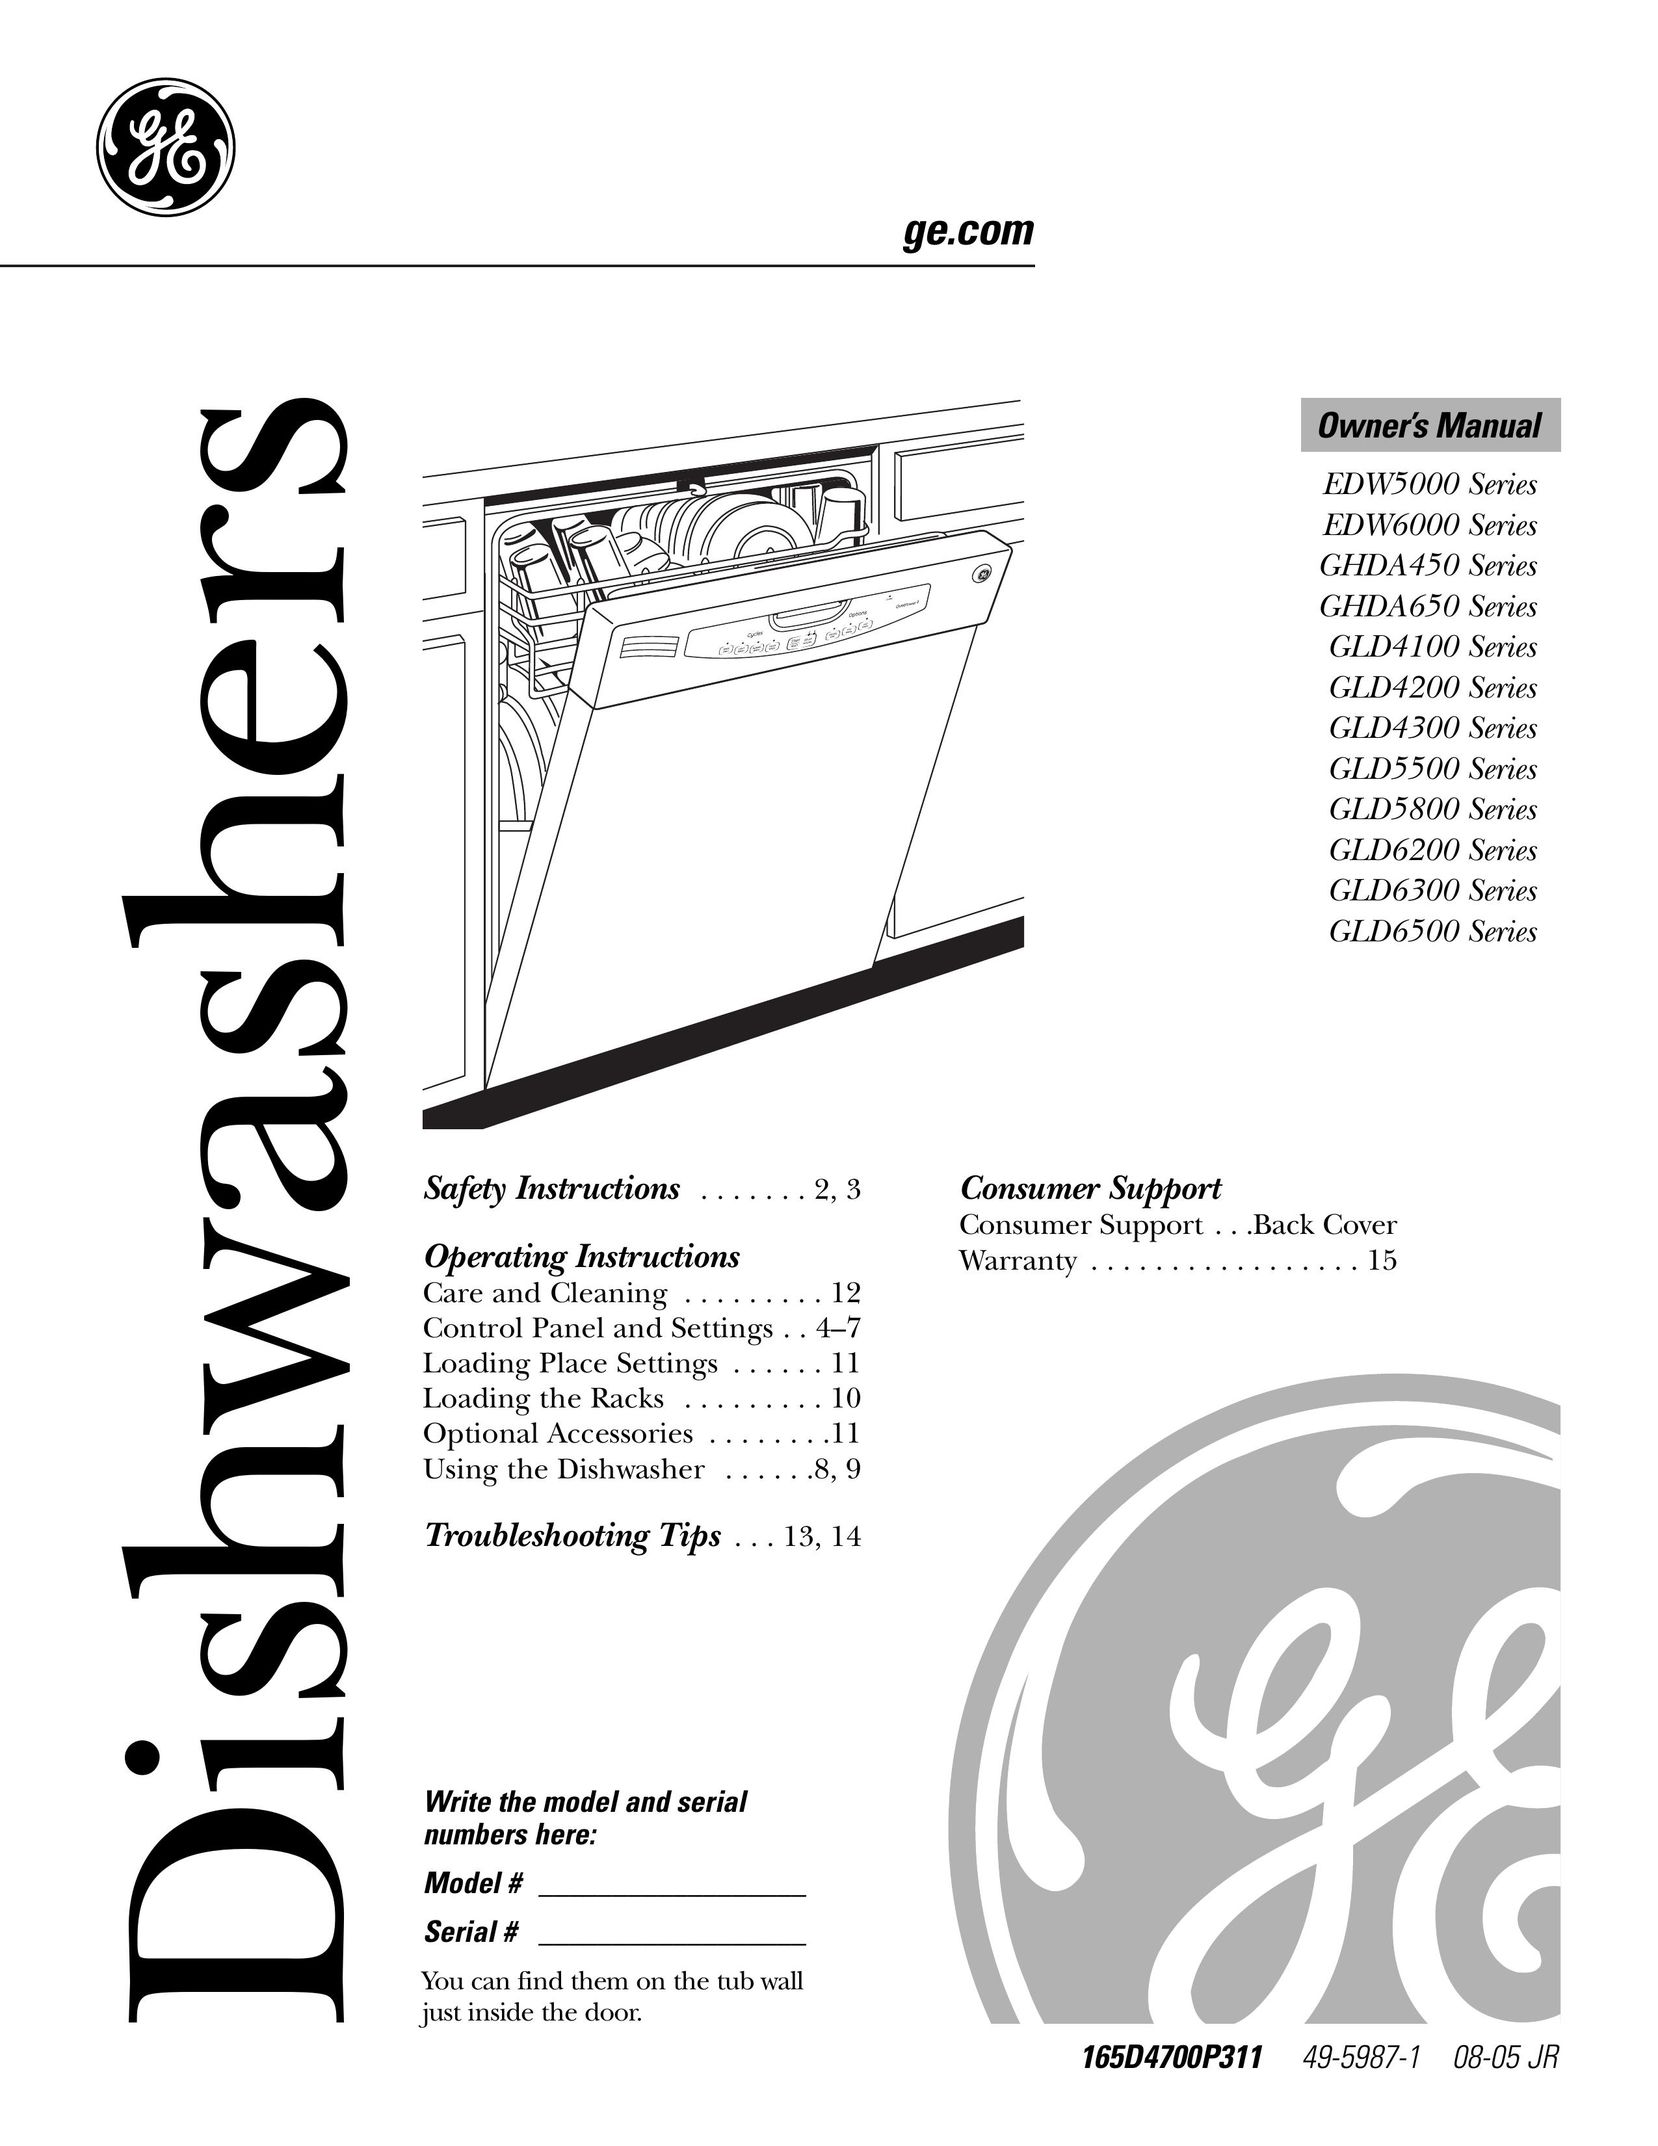 GE Monogram GLD4300 Dishwasher User Manual